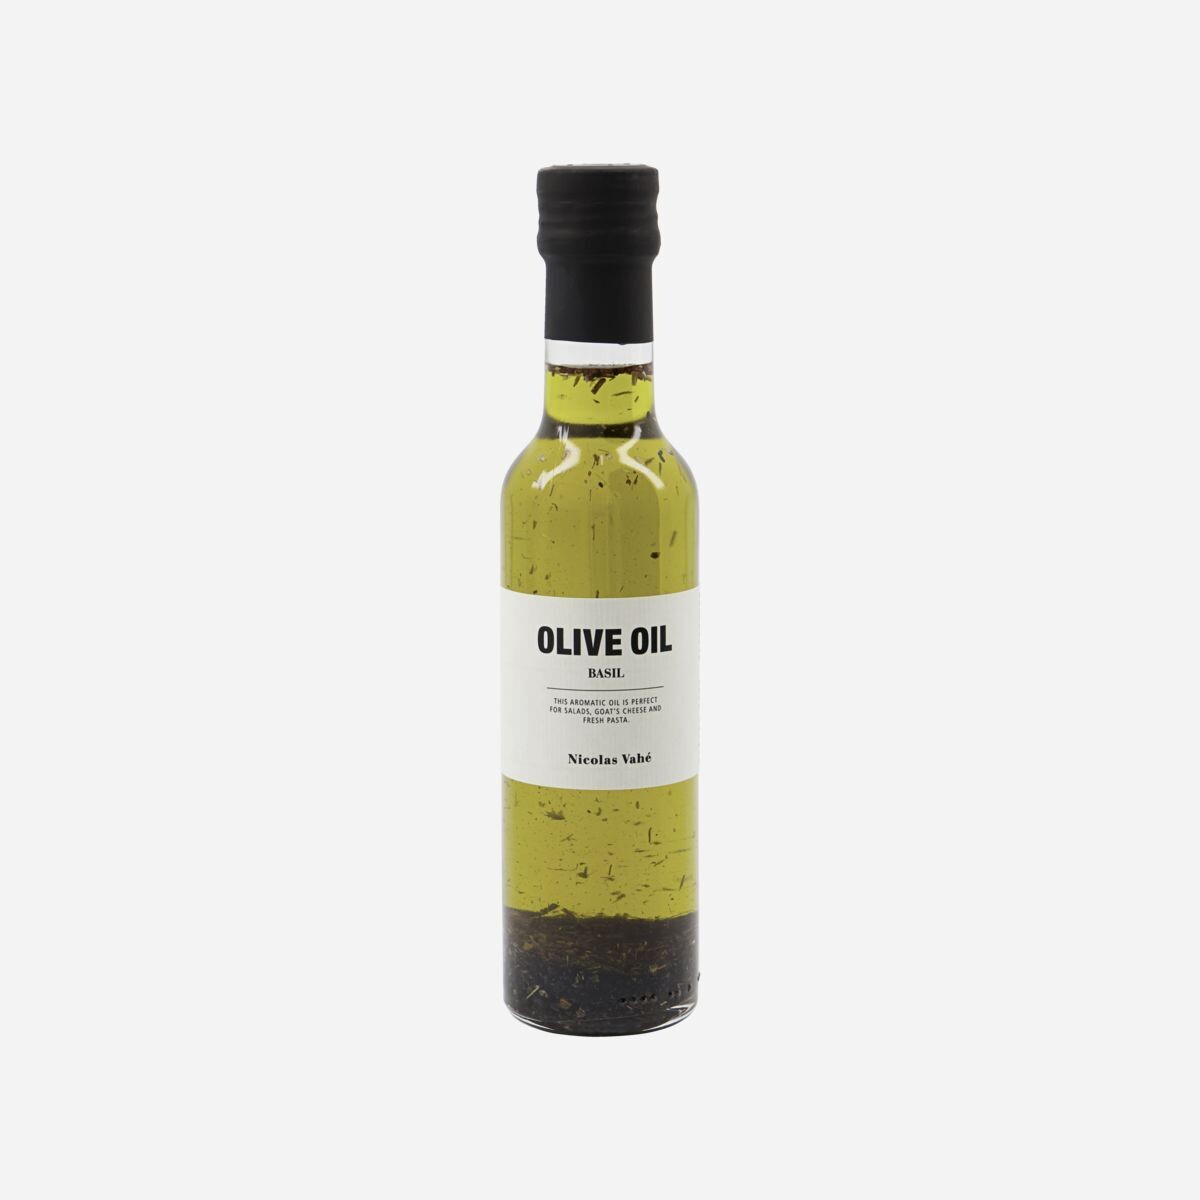 Nicolas Vahé Olive oil with basil